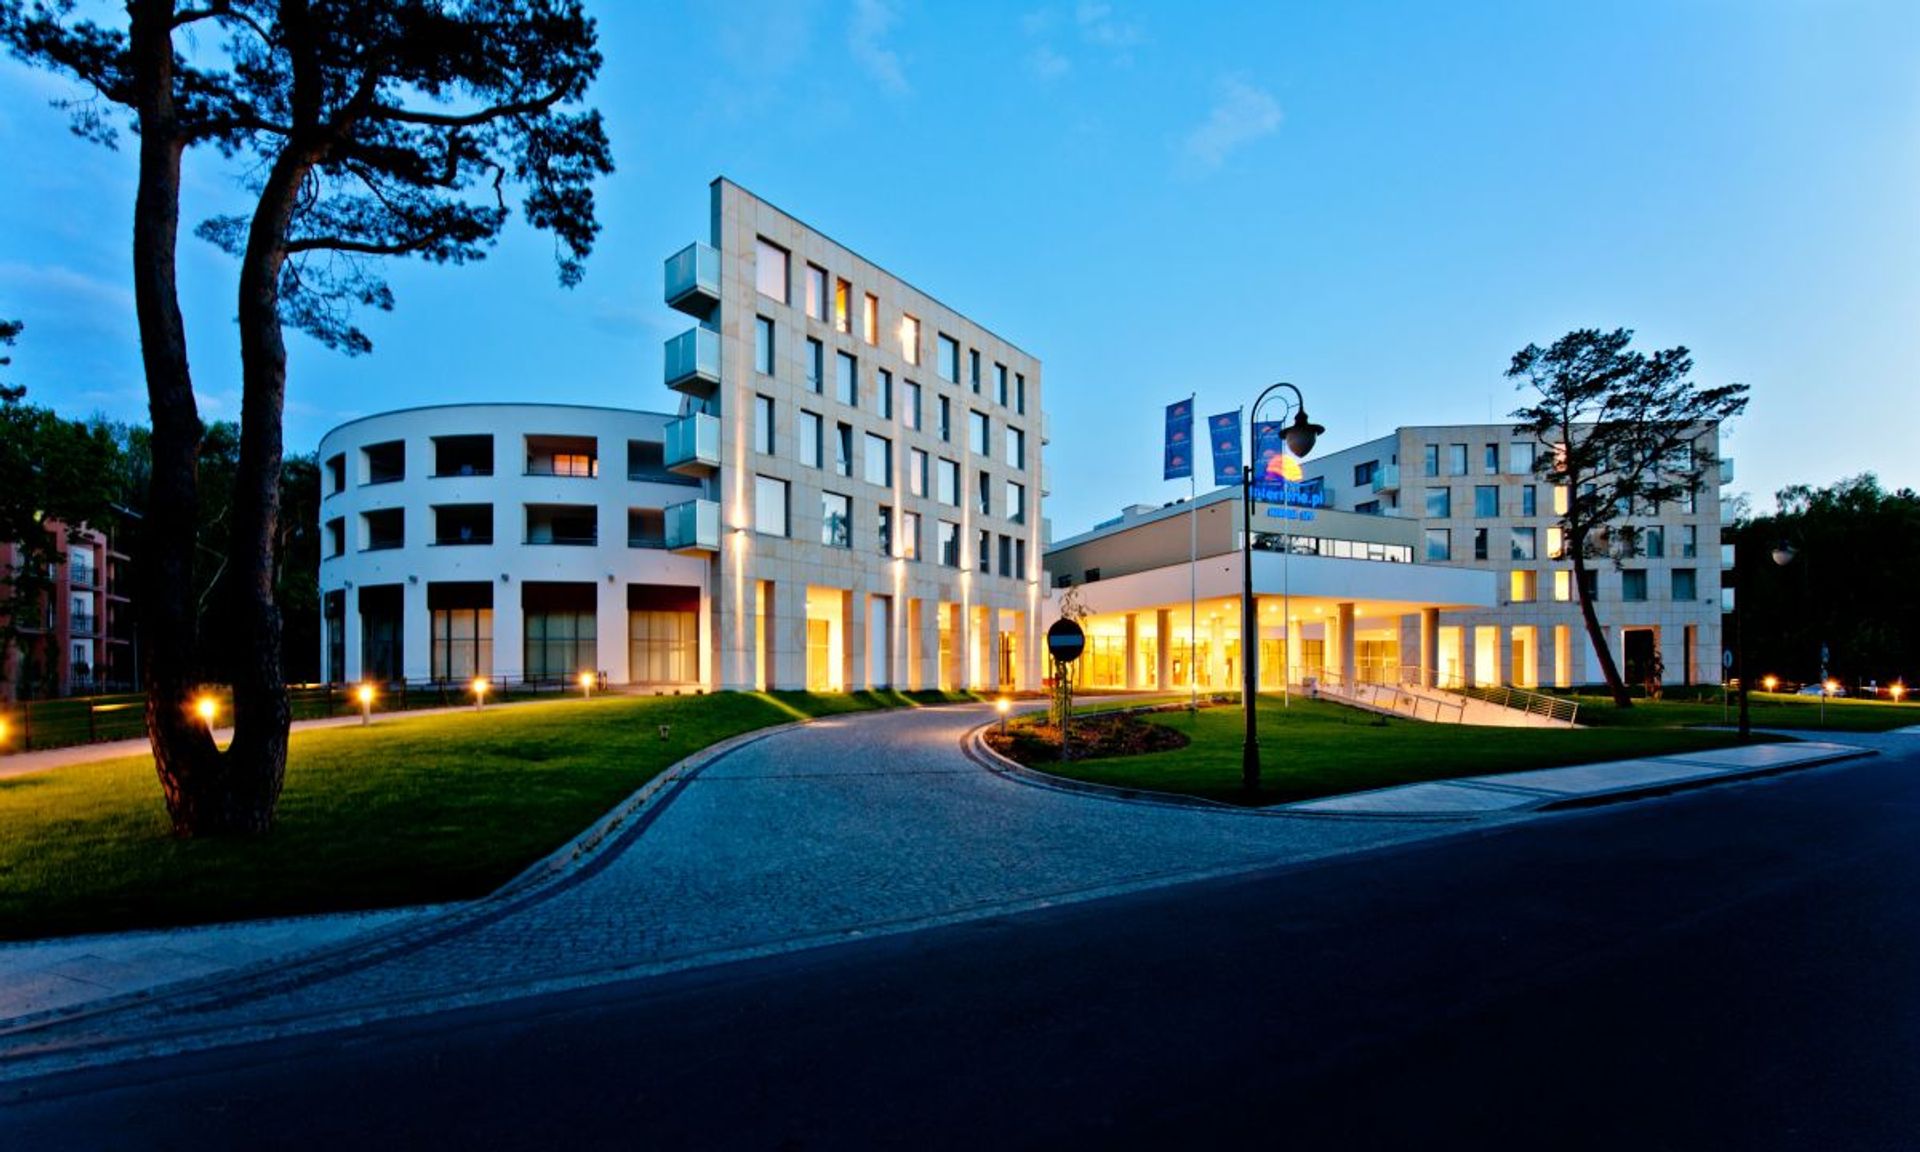 W Świnoujściu w 2024 roku ruszy hotel należącej do grupy Accor marki premium Mövenpick